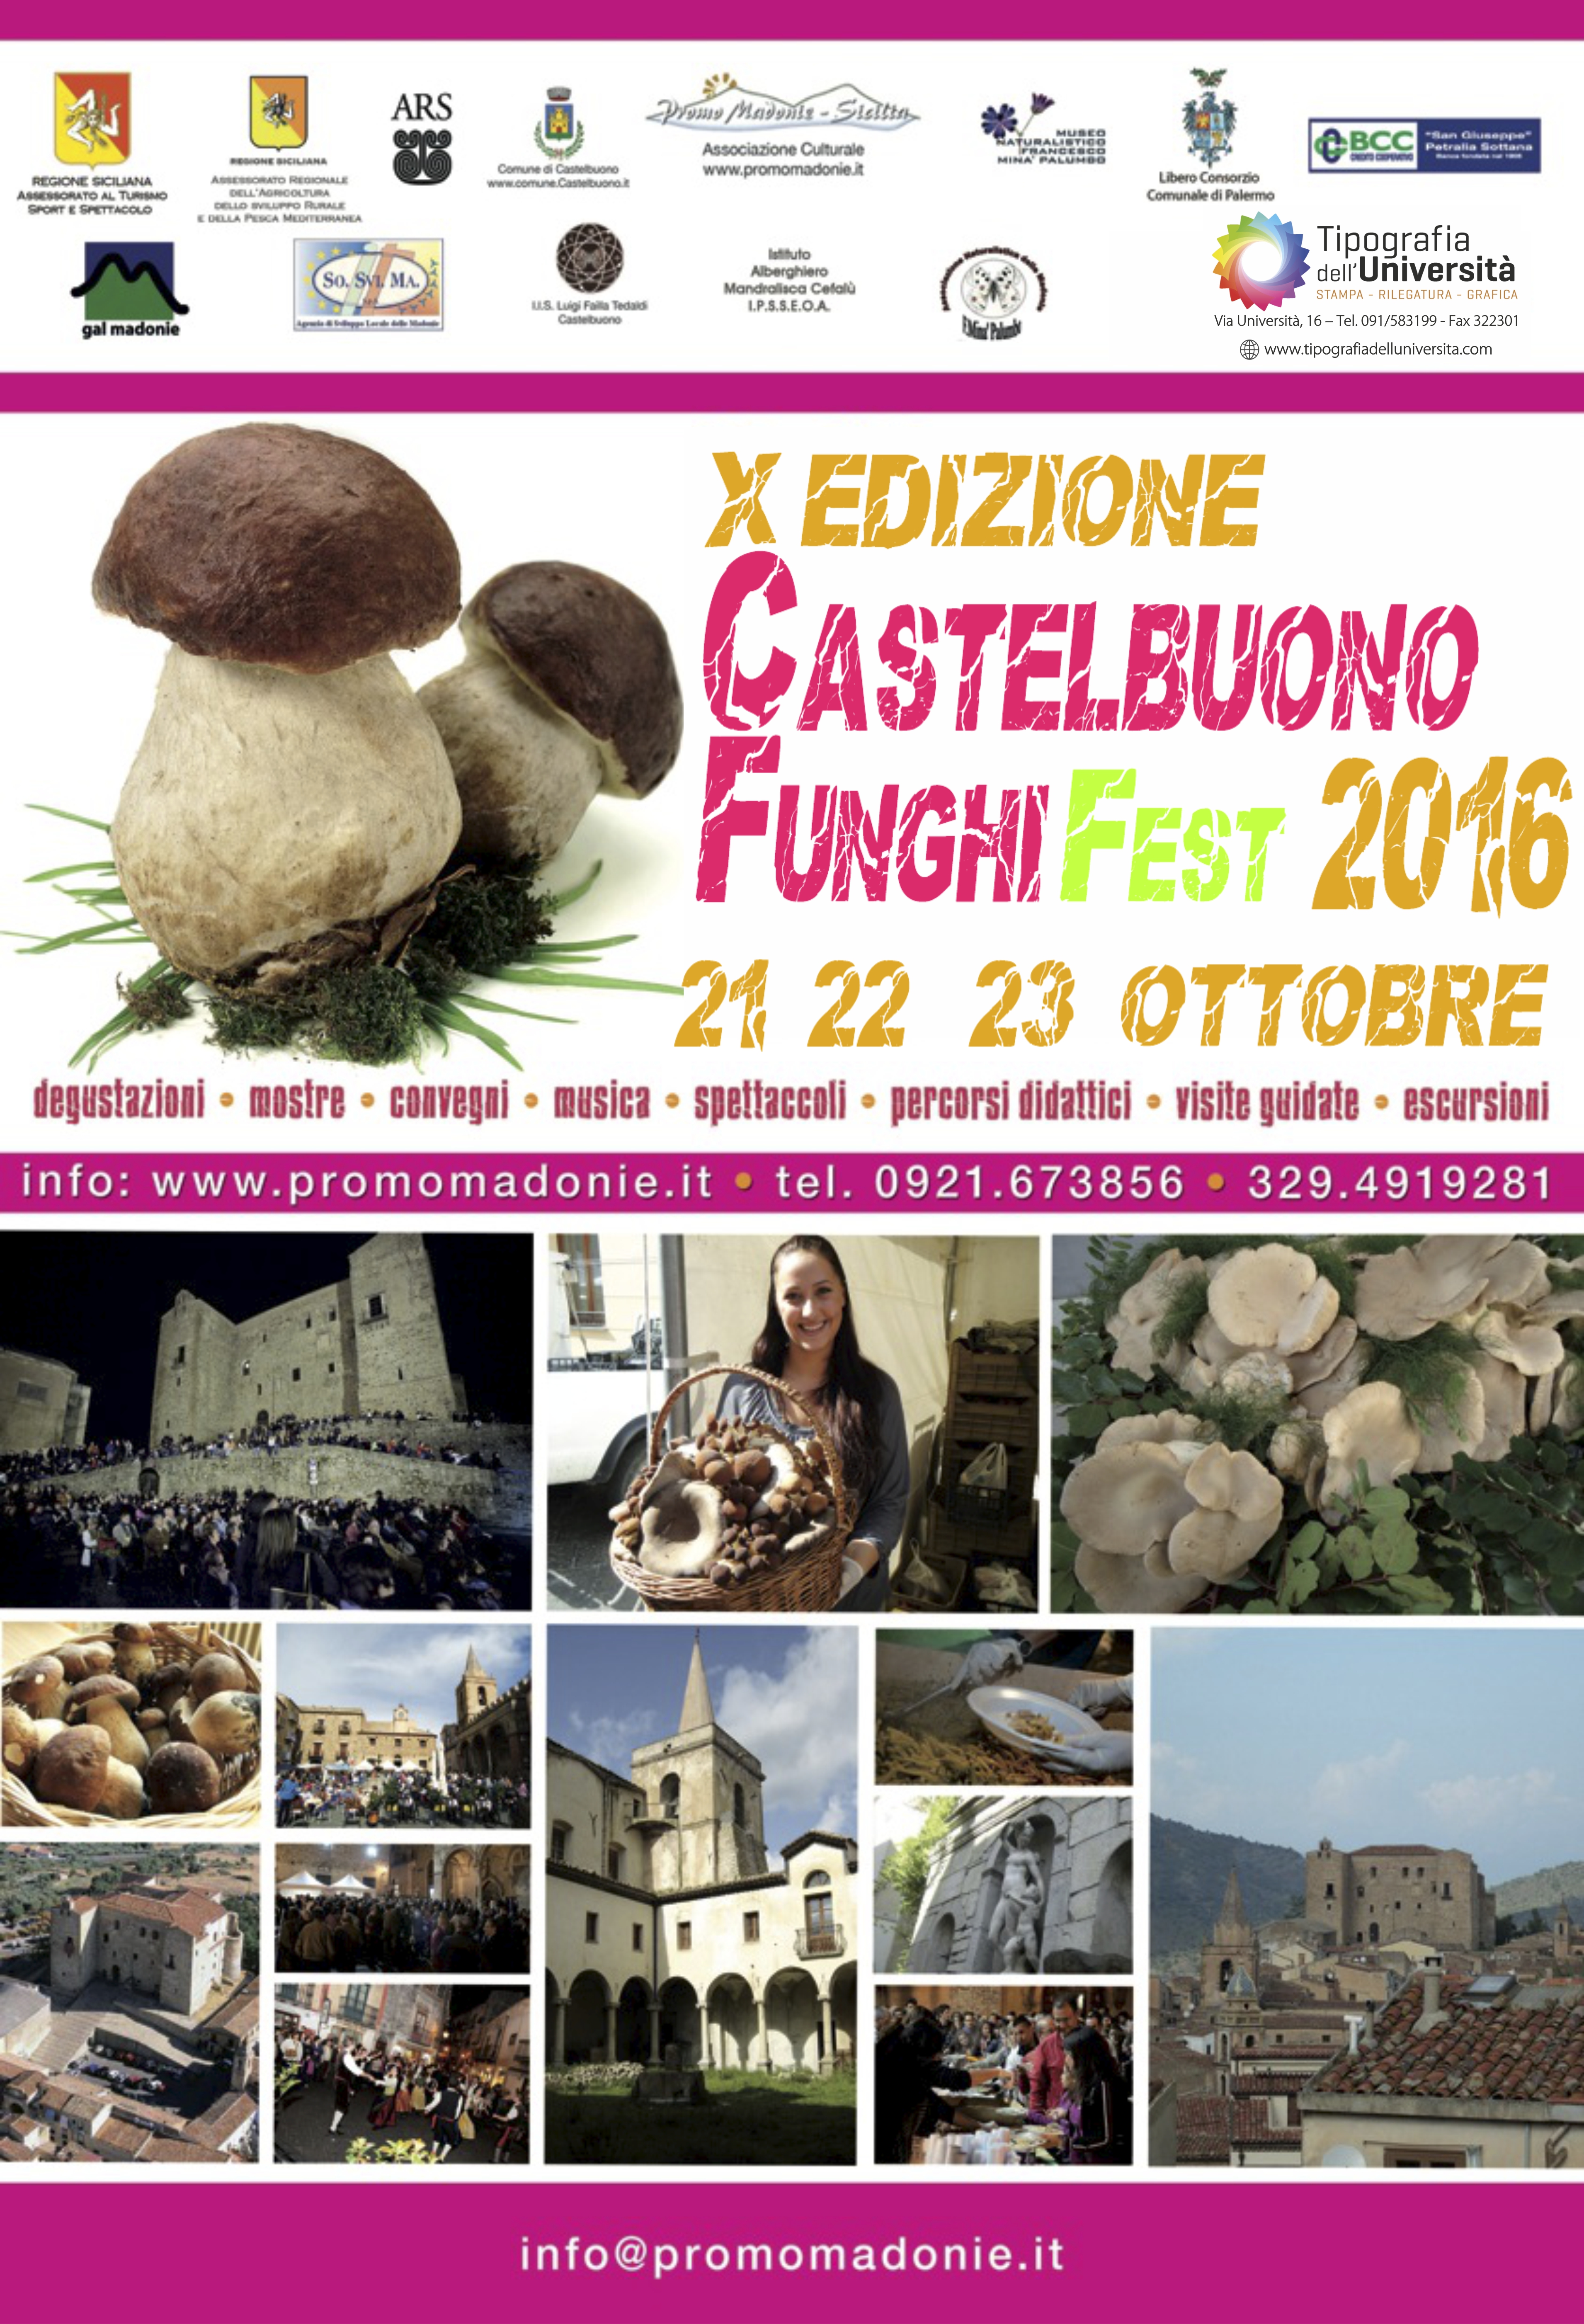 Funghi Fest Castelbuono 21/23 ottobre 2016